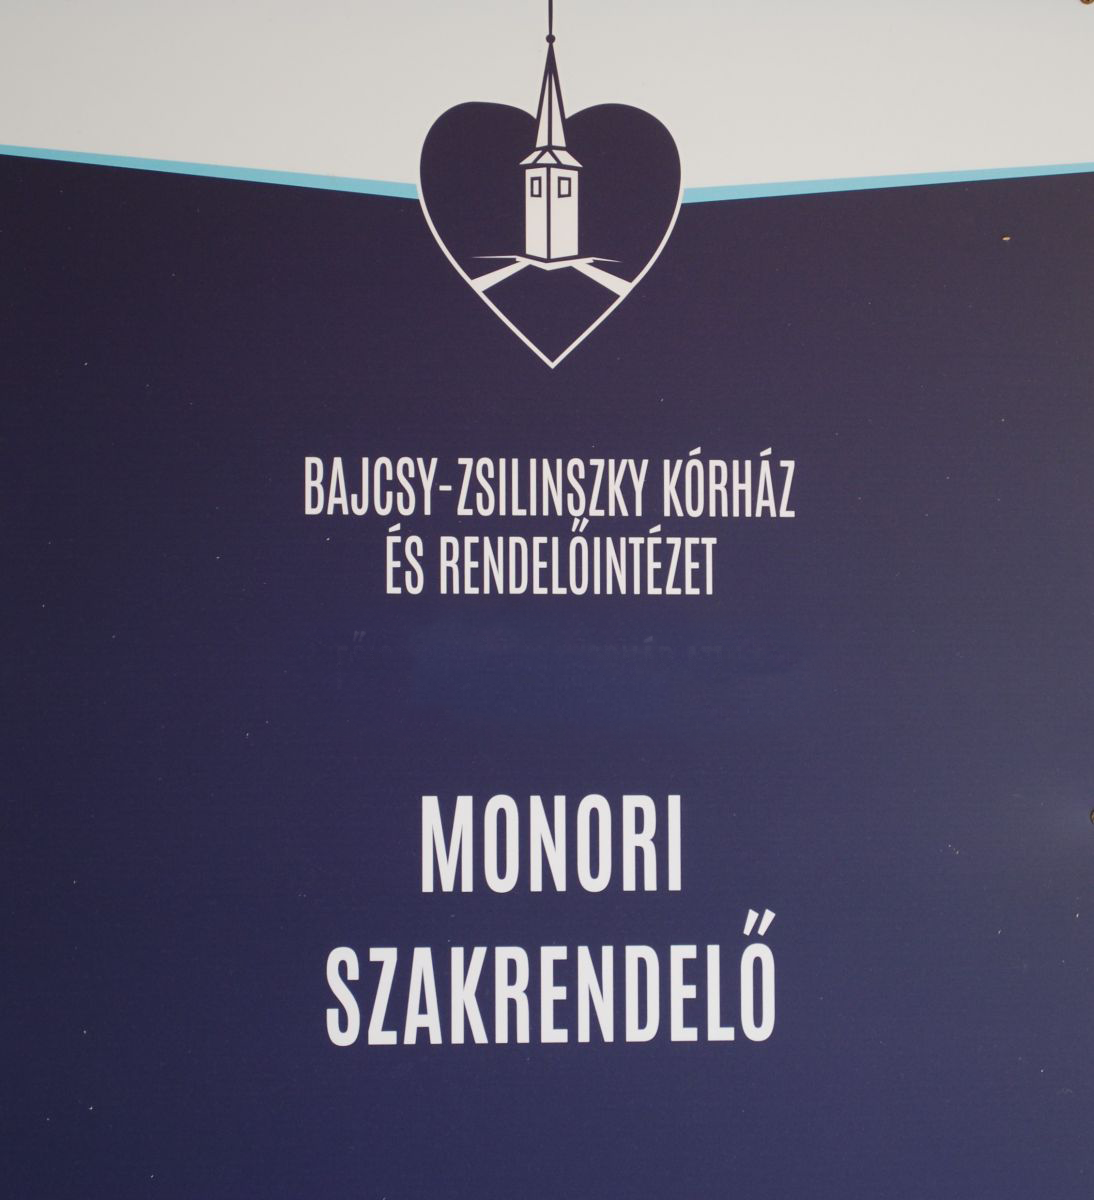 Rendelési idő változás a Budapesti Bajcsy-Zsilinszky Kórház és Rendelőintézet Monori Rendelőintézetében - Tüdőszűrés